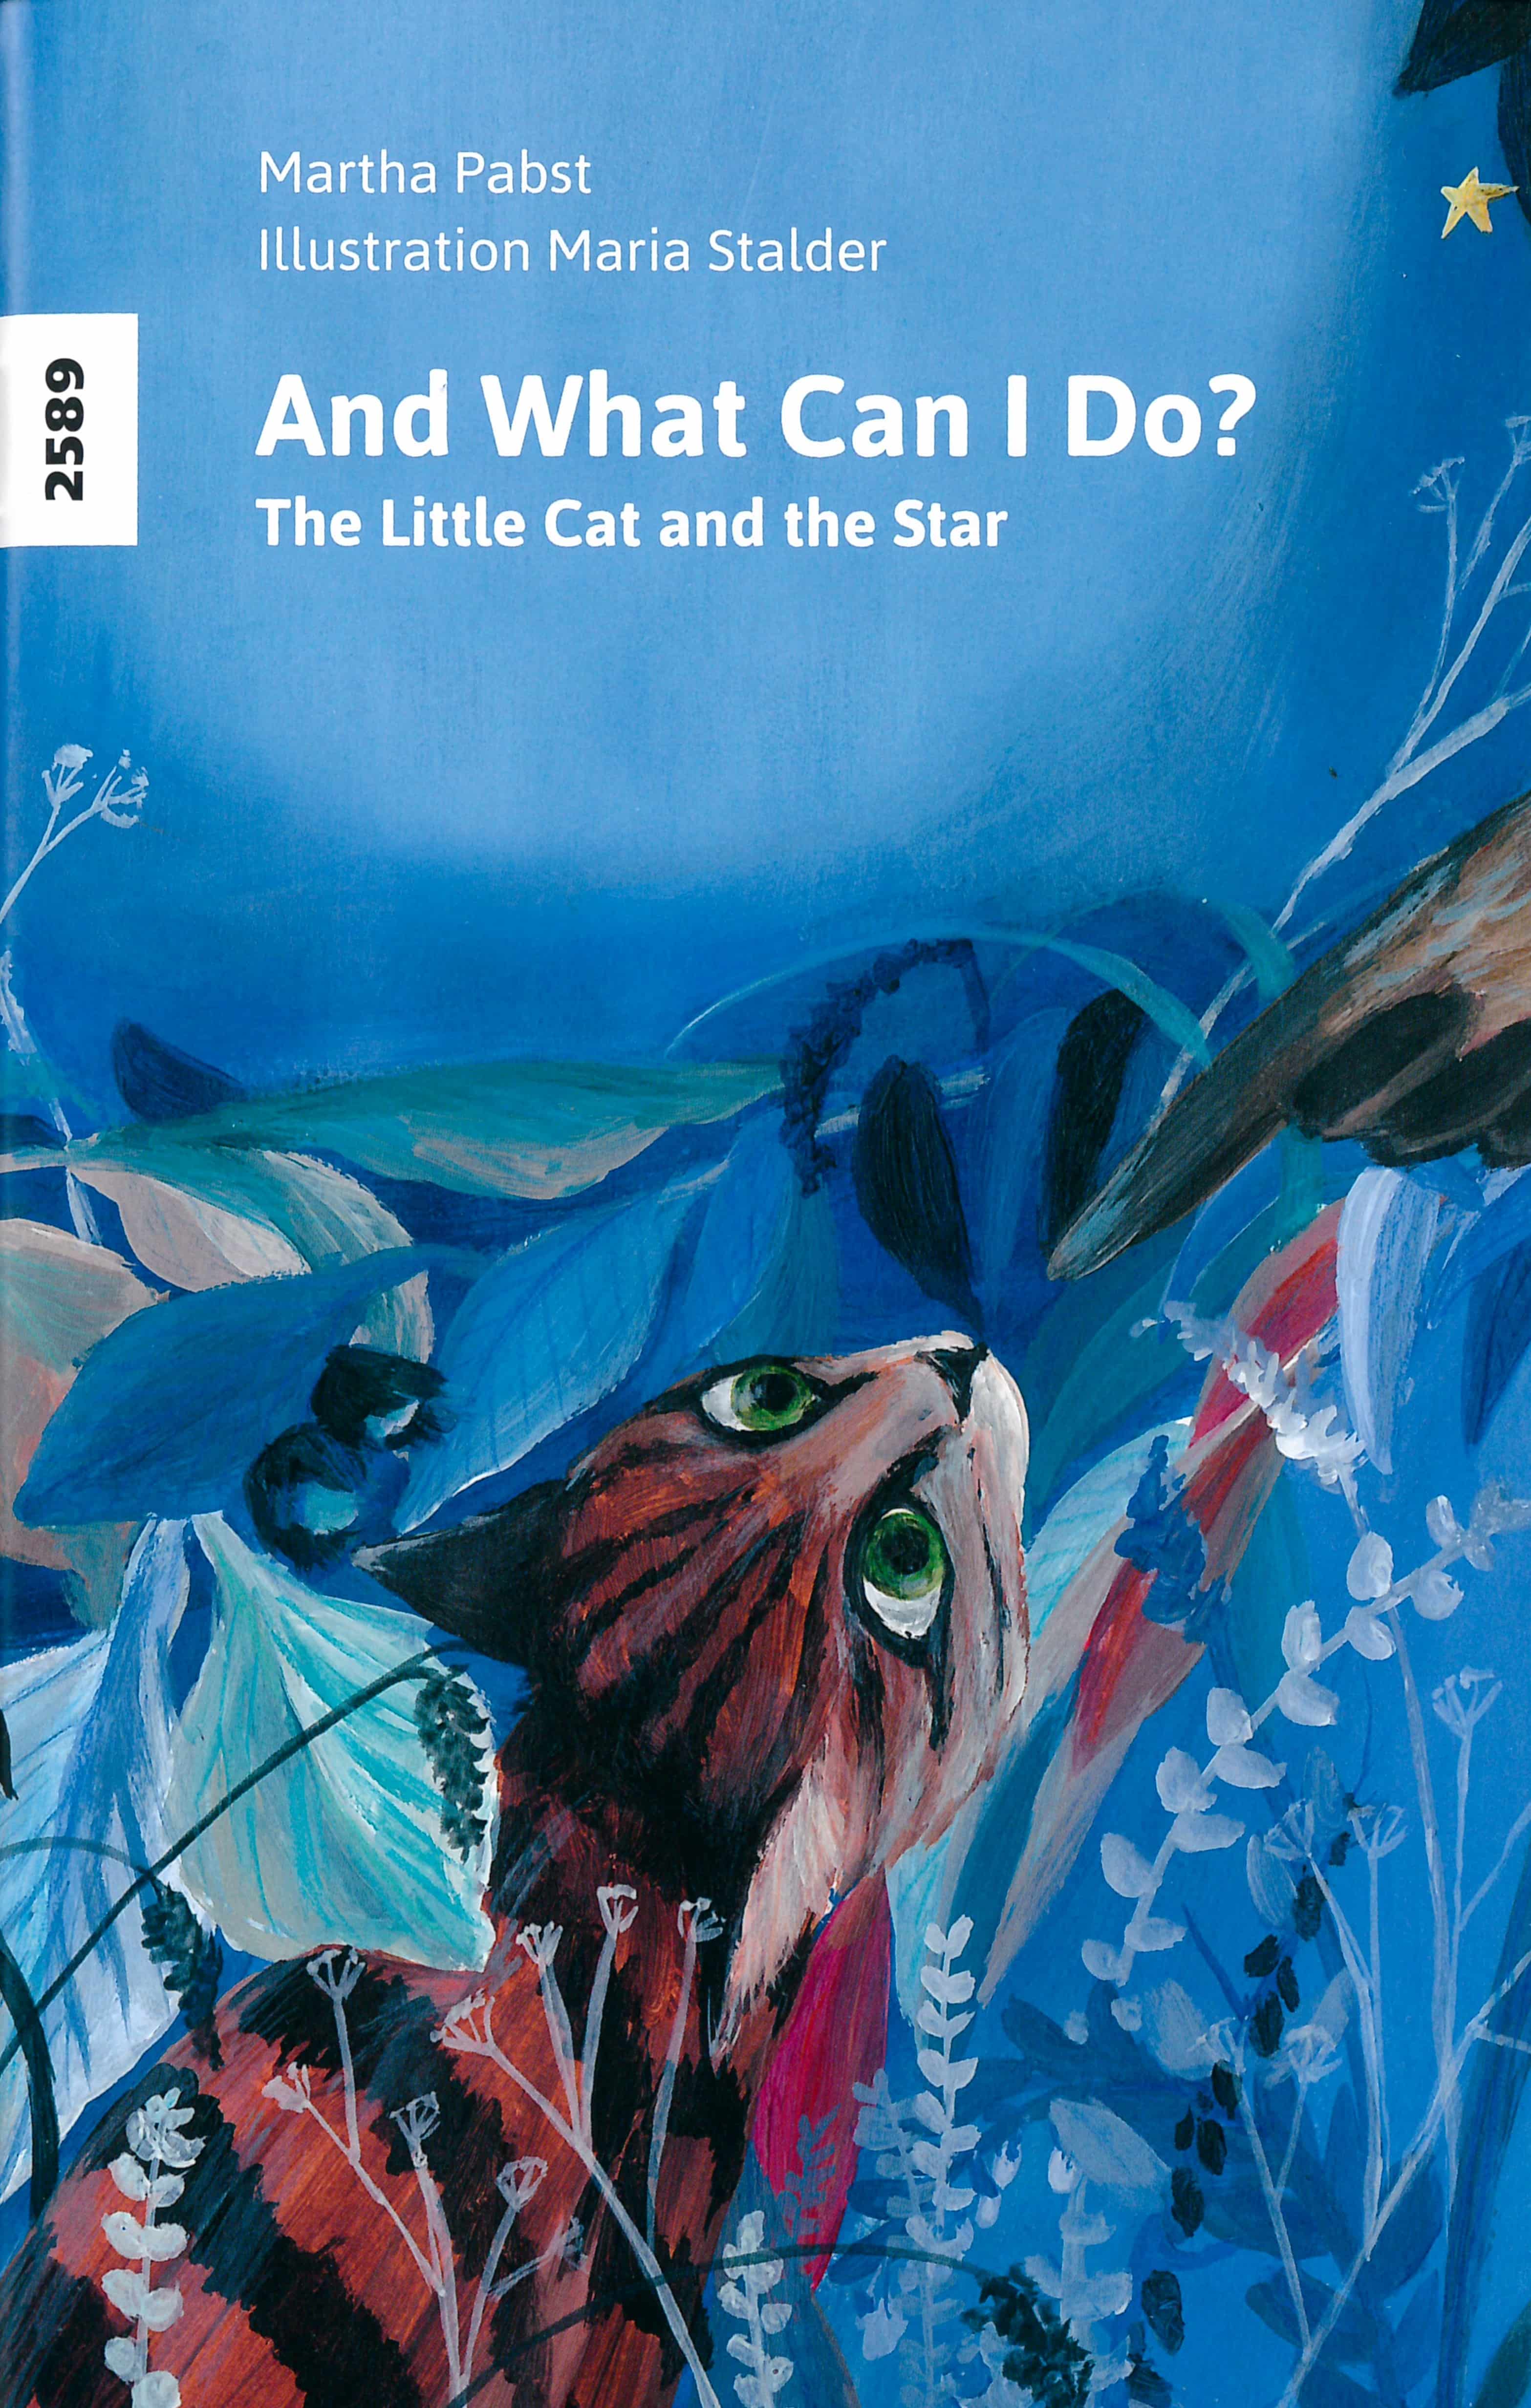 And what can I do? The little cat and the star, ein Kinderbuch von Martha Pabst, Illustration von Maria Stalder, SJW Verlag